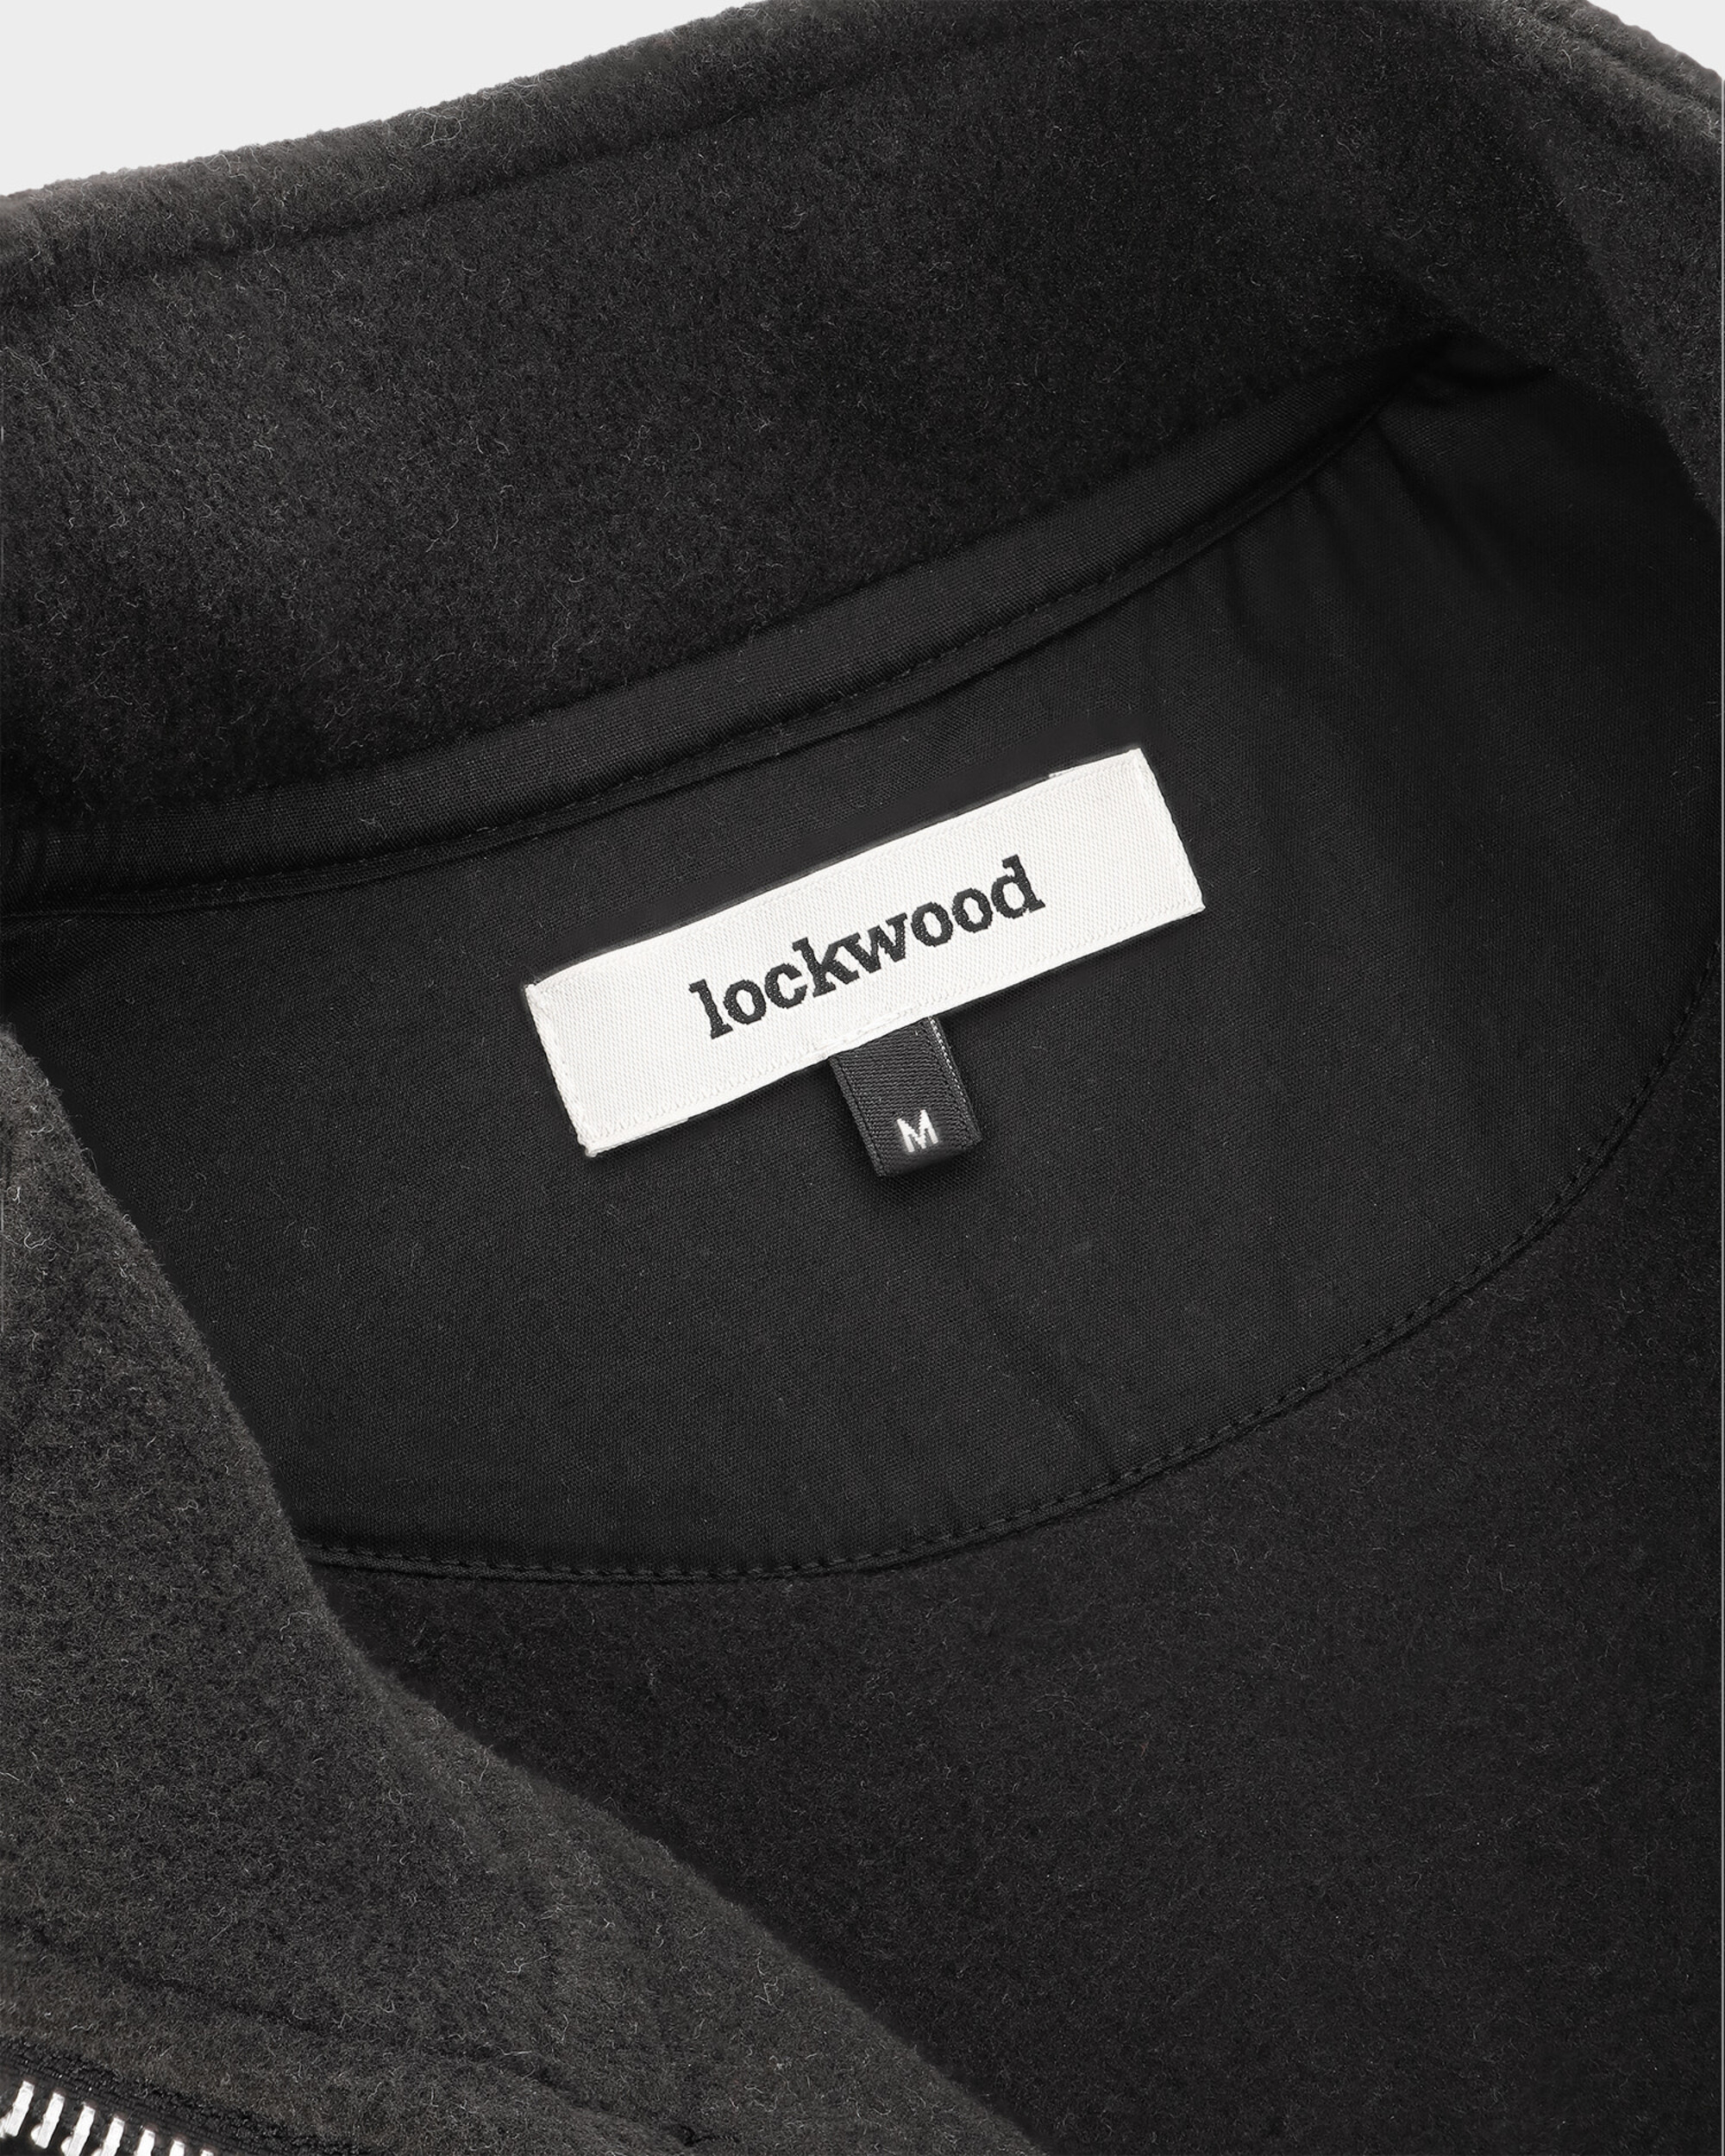 Lockwood Heavyweight Fleece Half Zip - Black